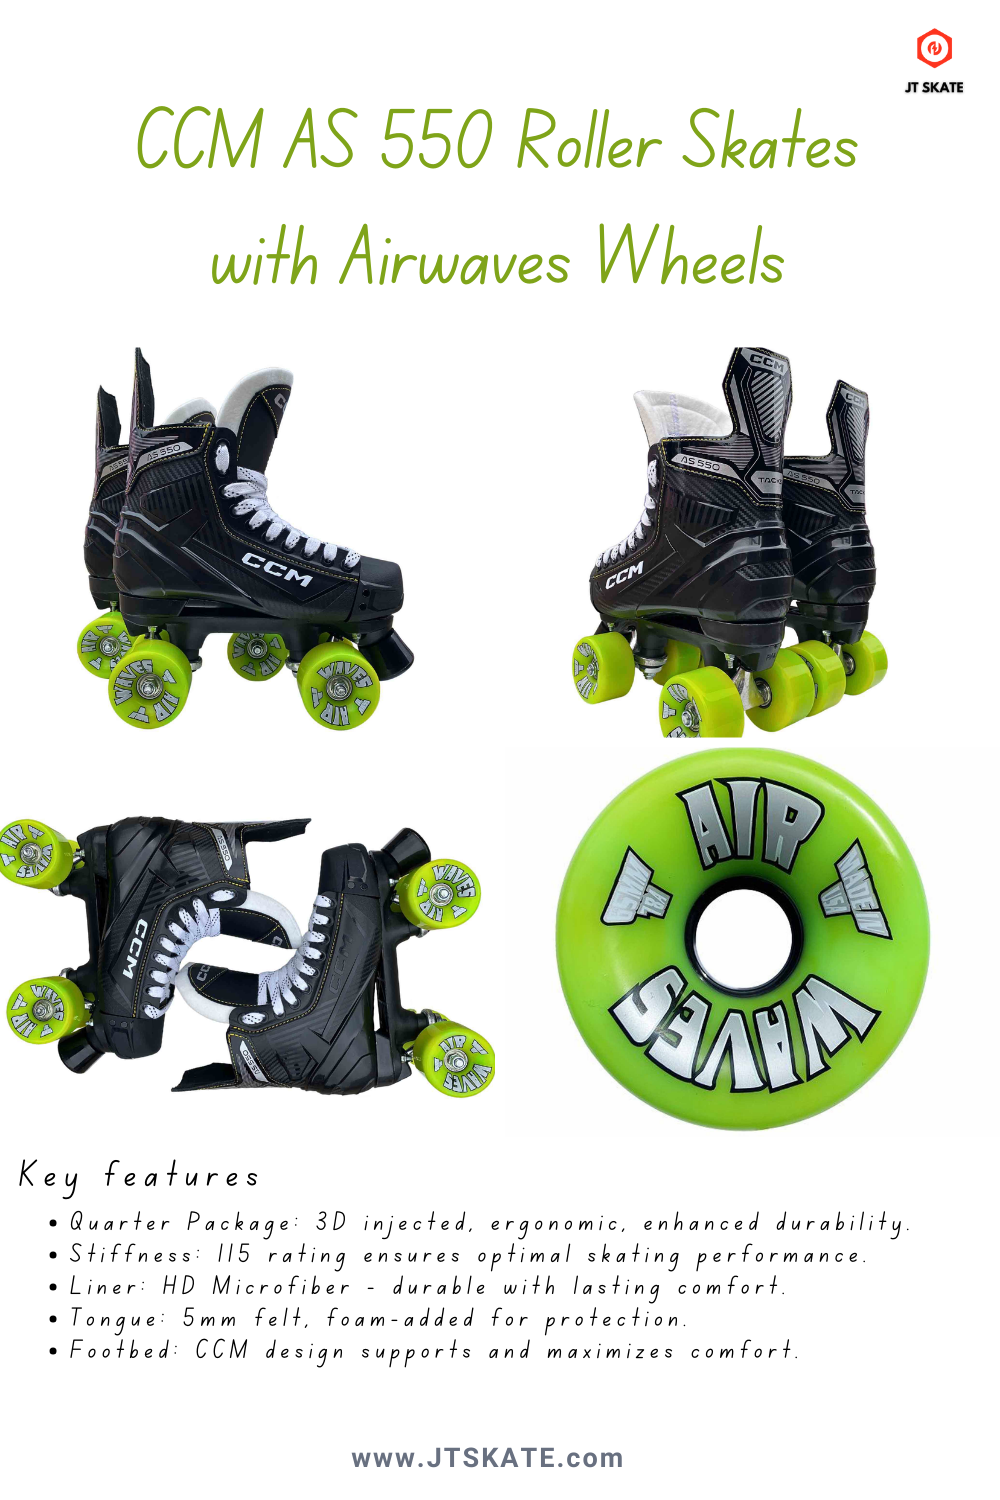 Bauer X-LP Quad Roller Skates - Airwave Wheels